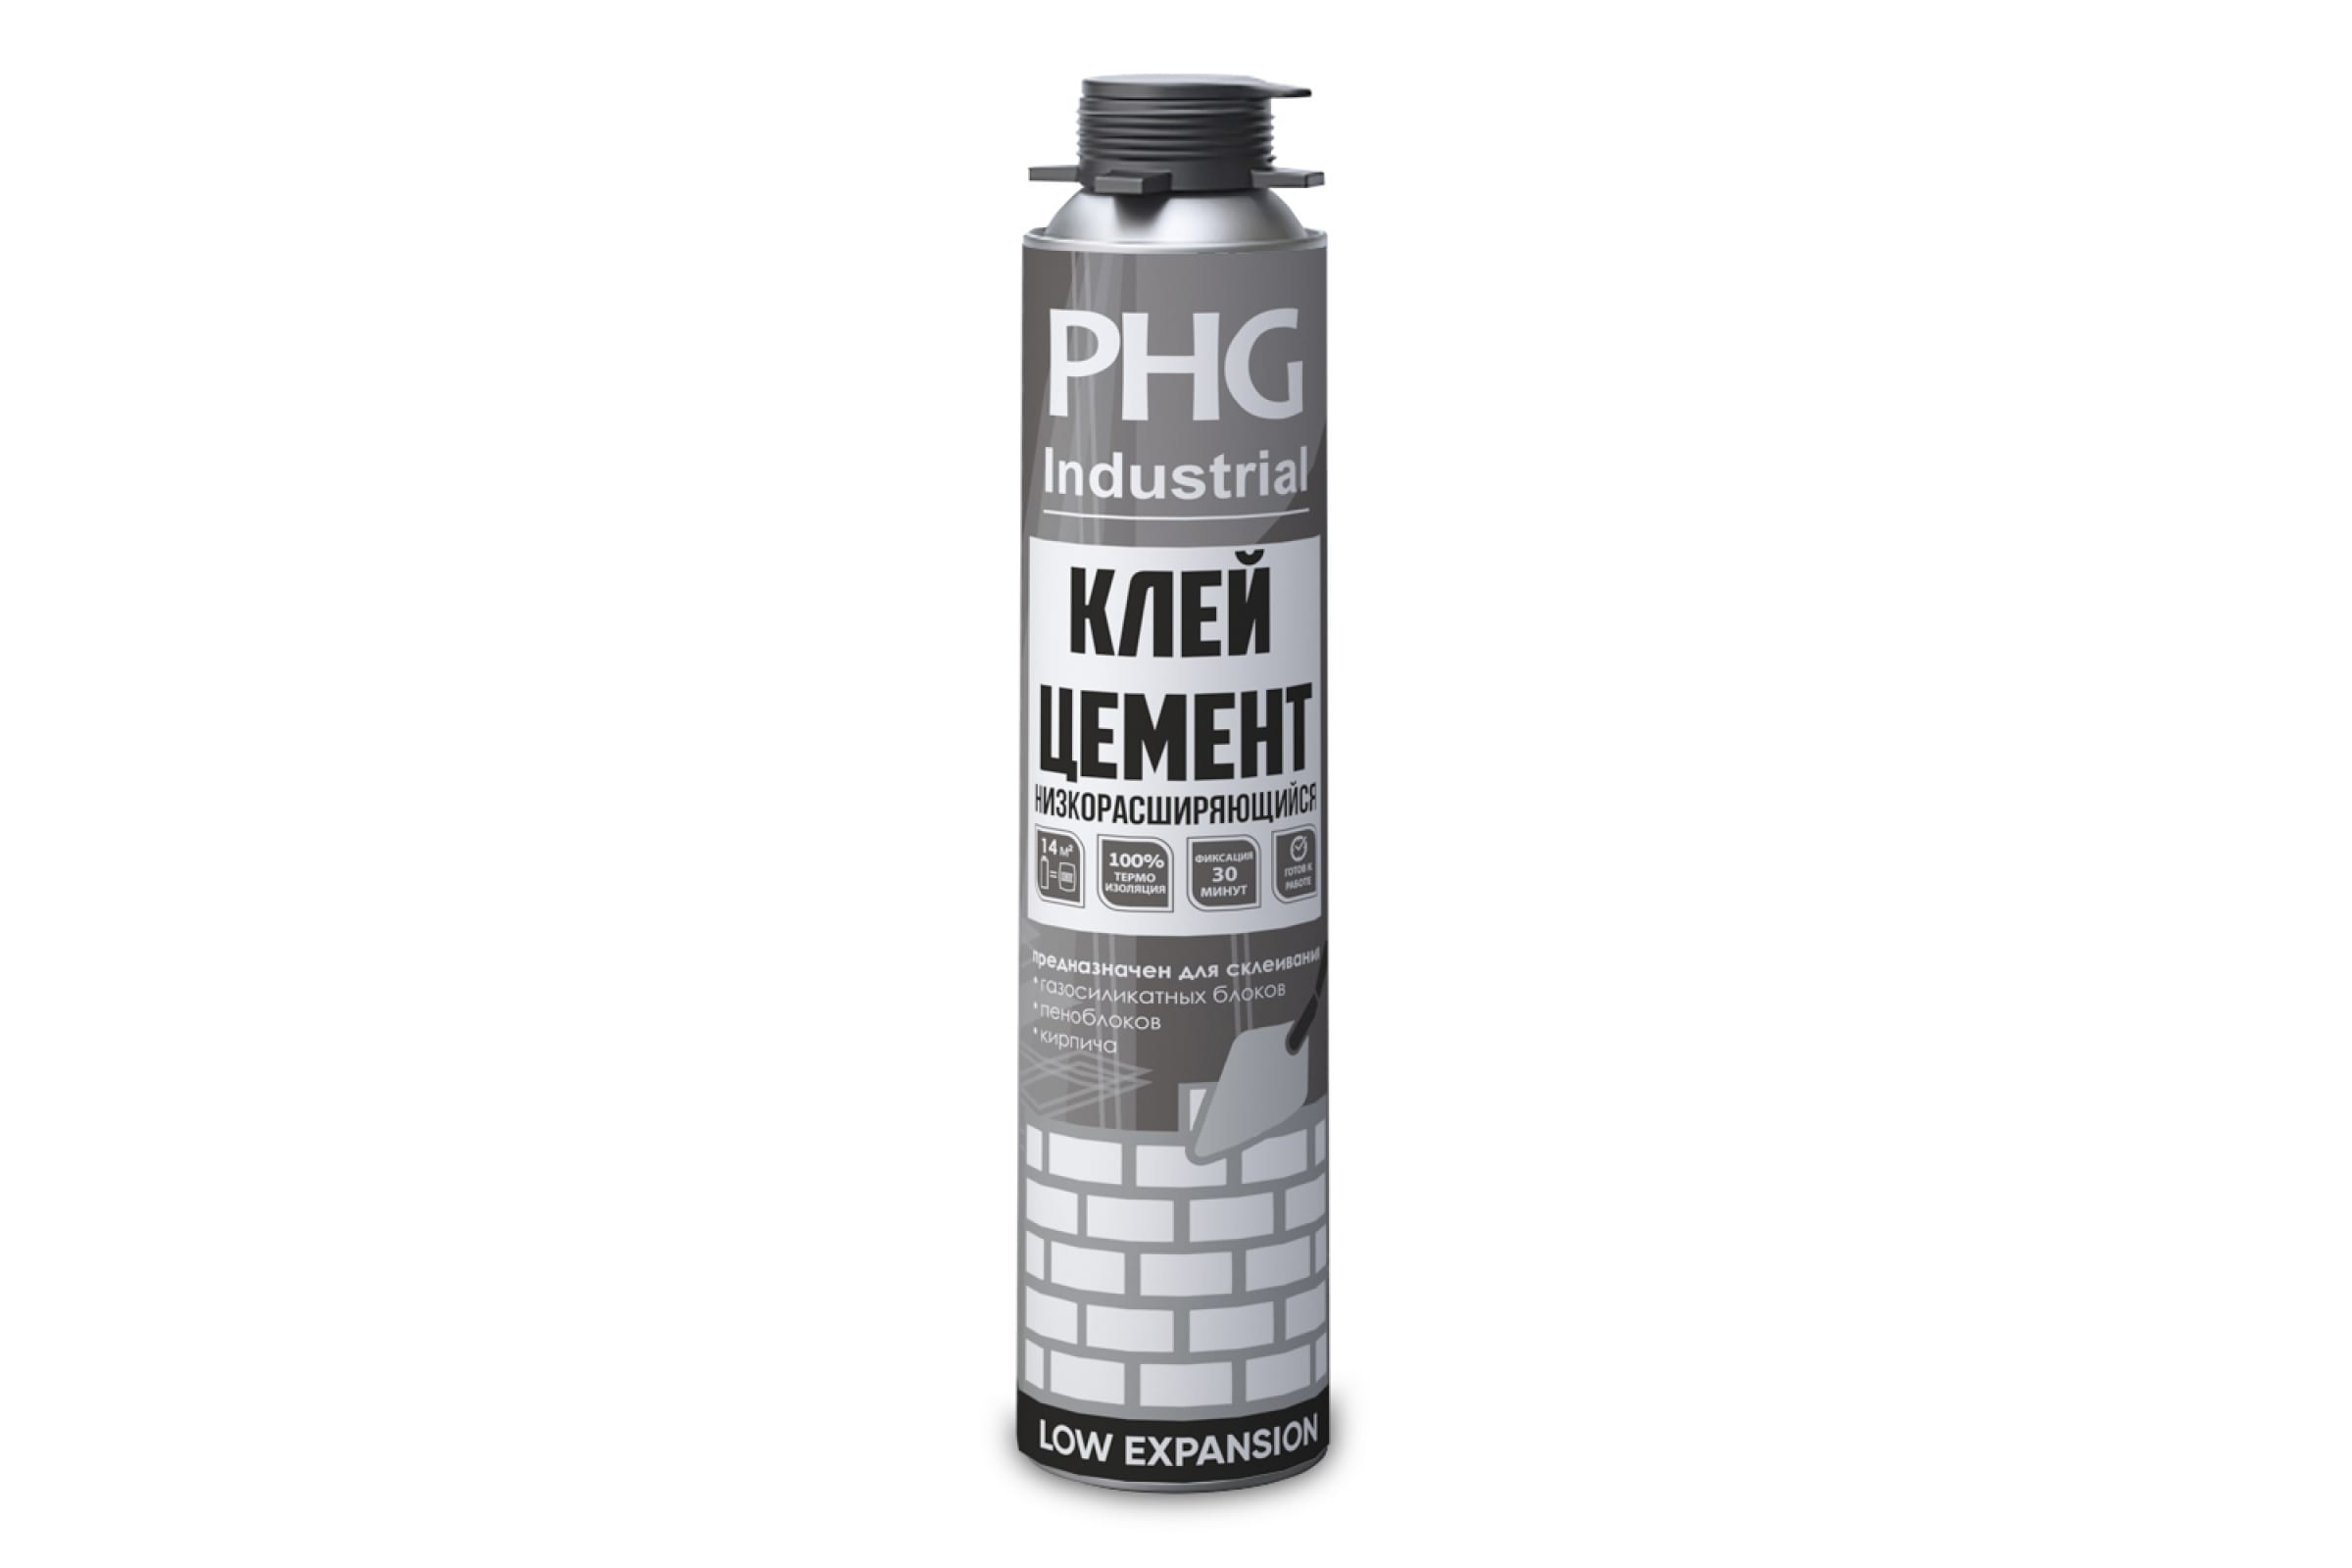 фото Phg industrial glue cement профессиональный клей цемент